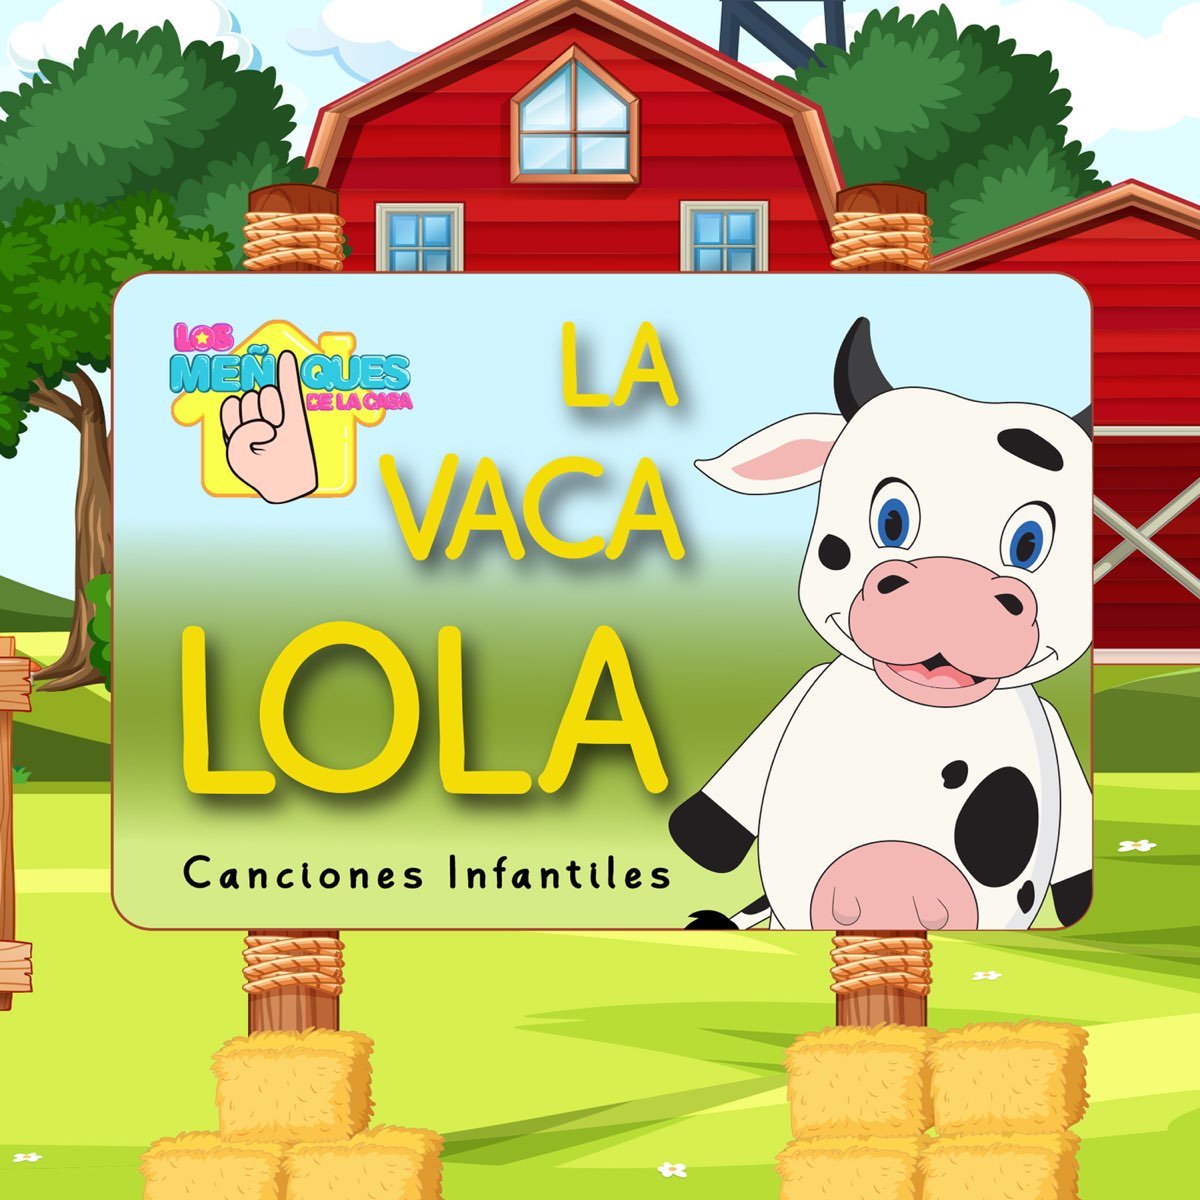 La Vaca Lola - Single by Los Meñiques De La Casa on Apple Music